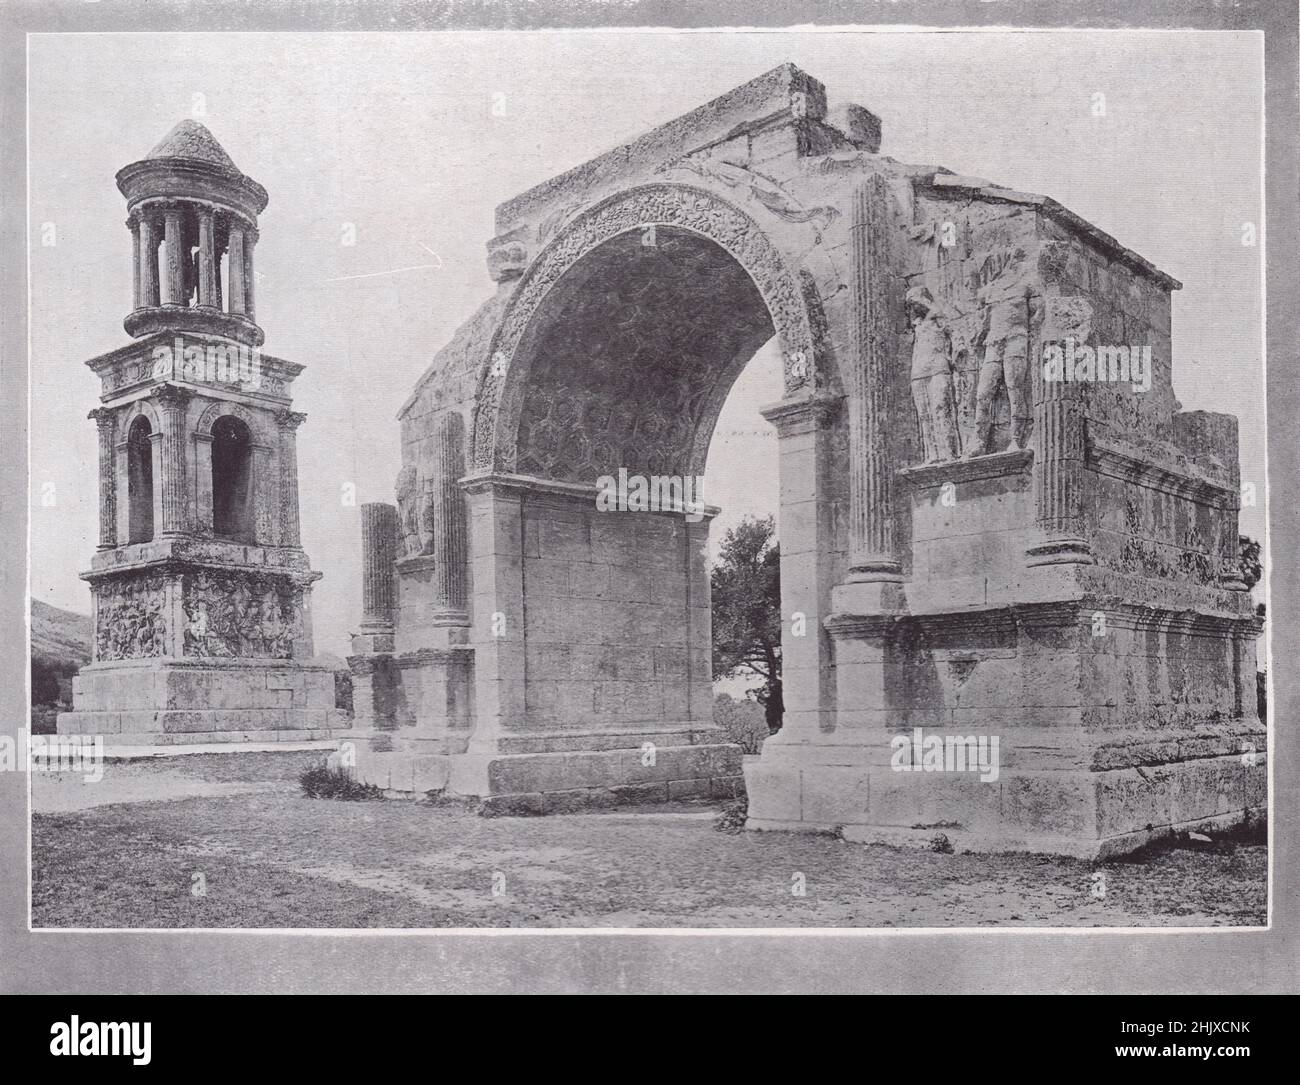 The Mausoleum and the Triumphal Arch, St. Rémy. Bouches-du-Rhône. France (1925) Stock Photo